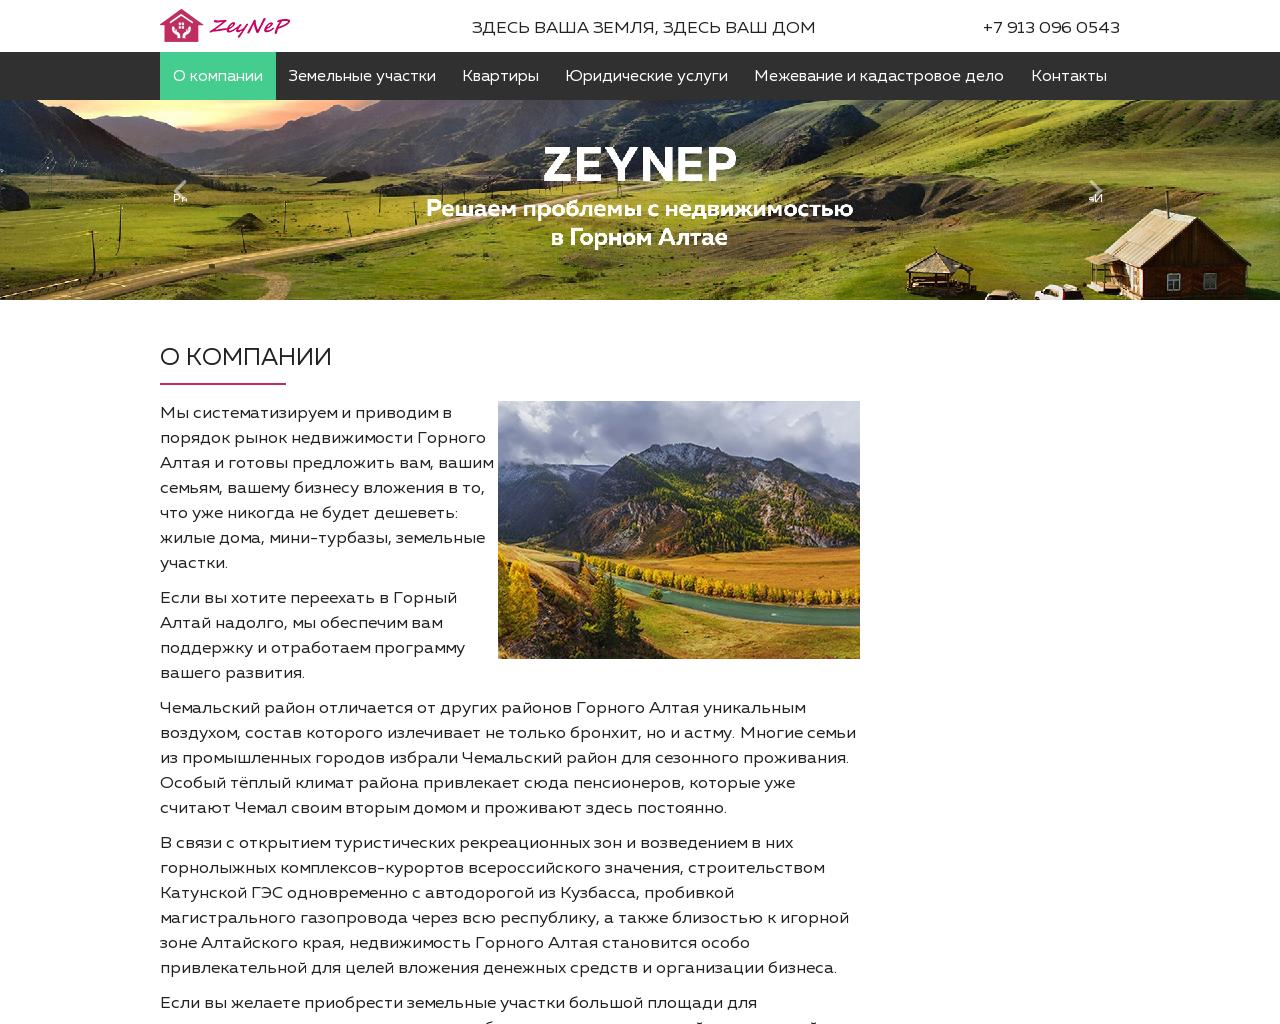 Изображение сайта zeynep.ru в разрешении 1280x1024